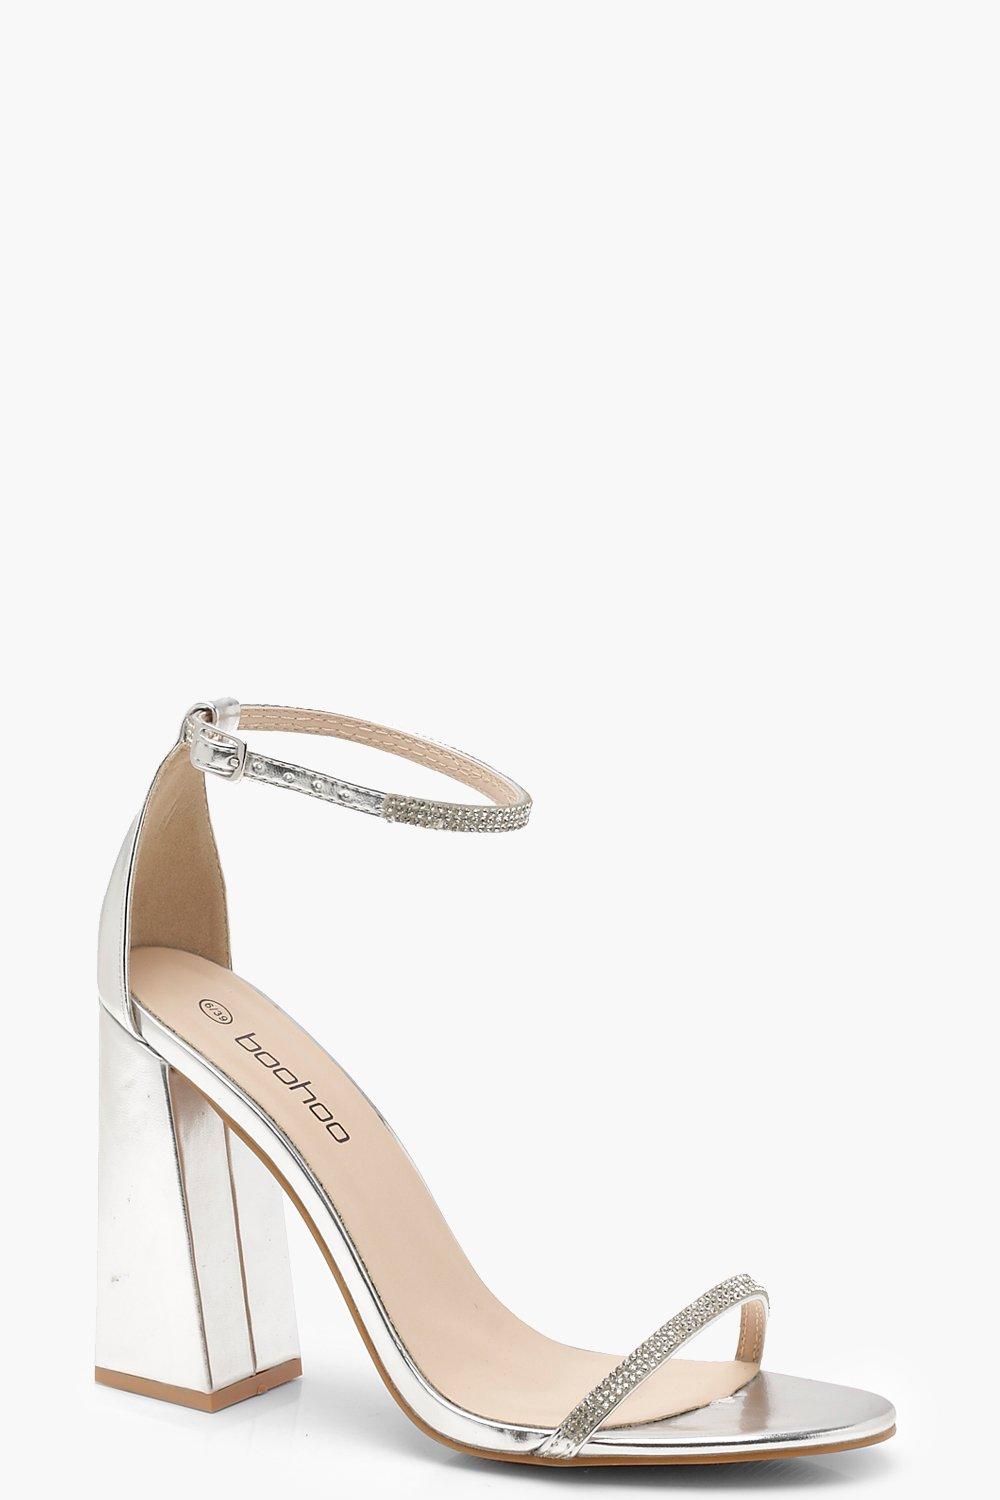 metallic silver block heels